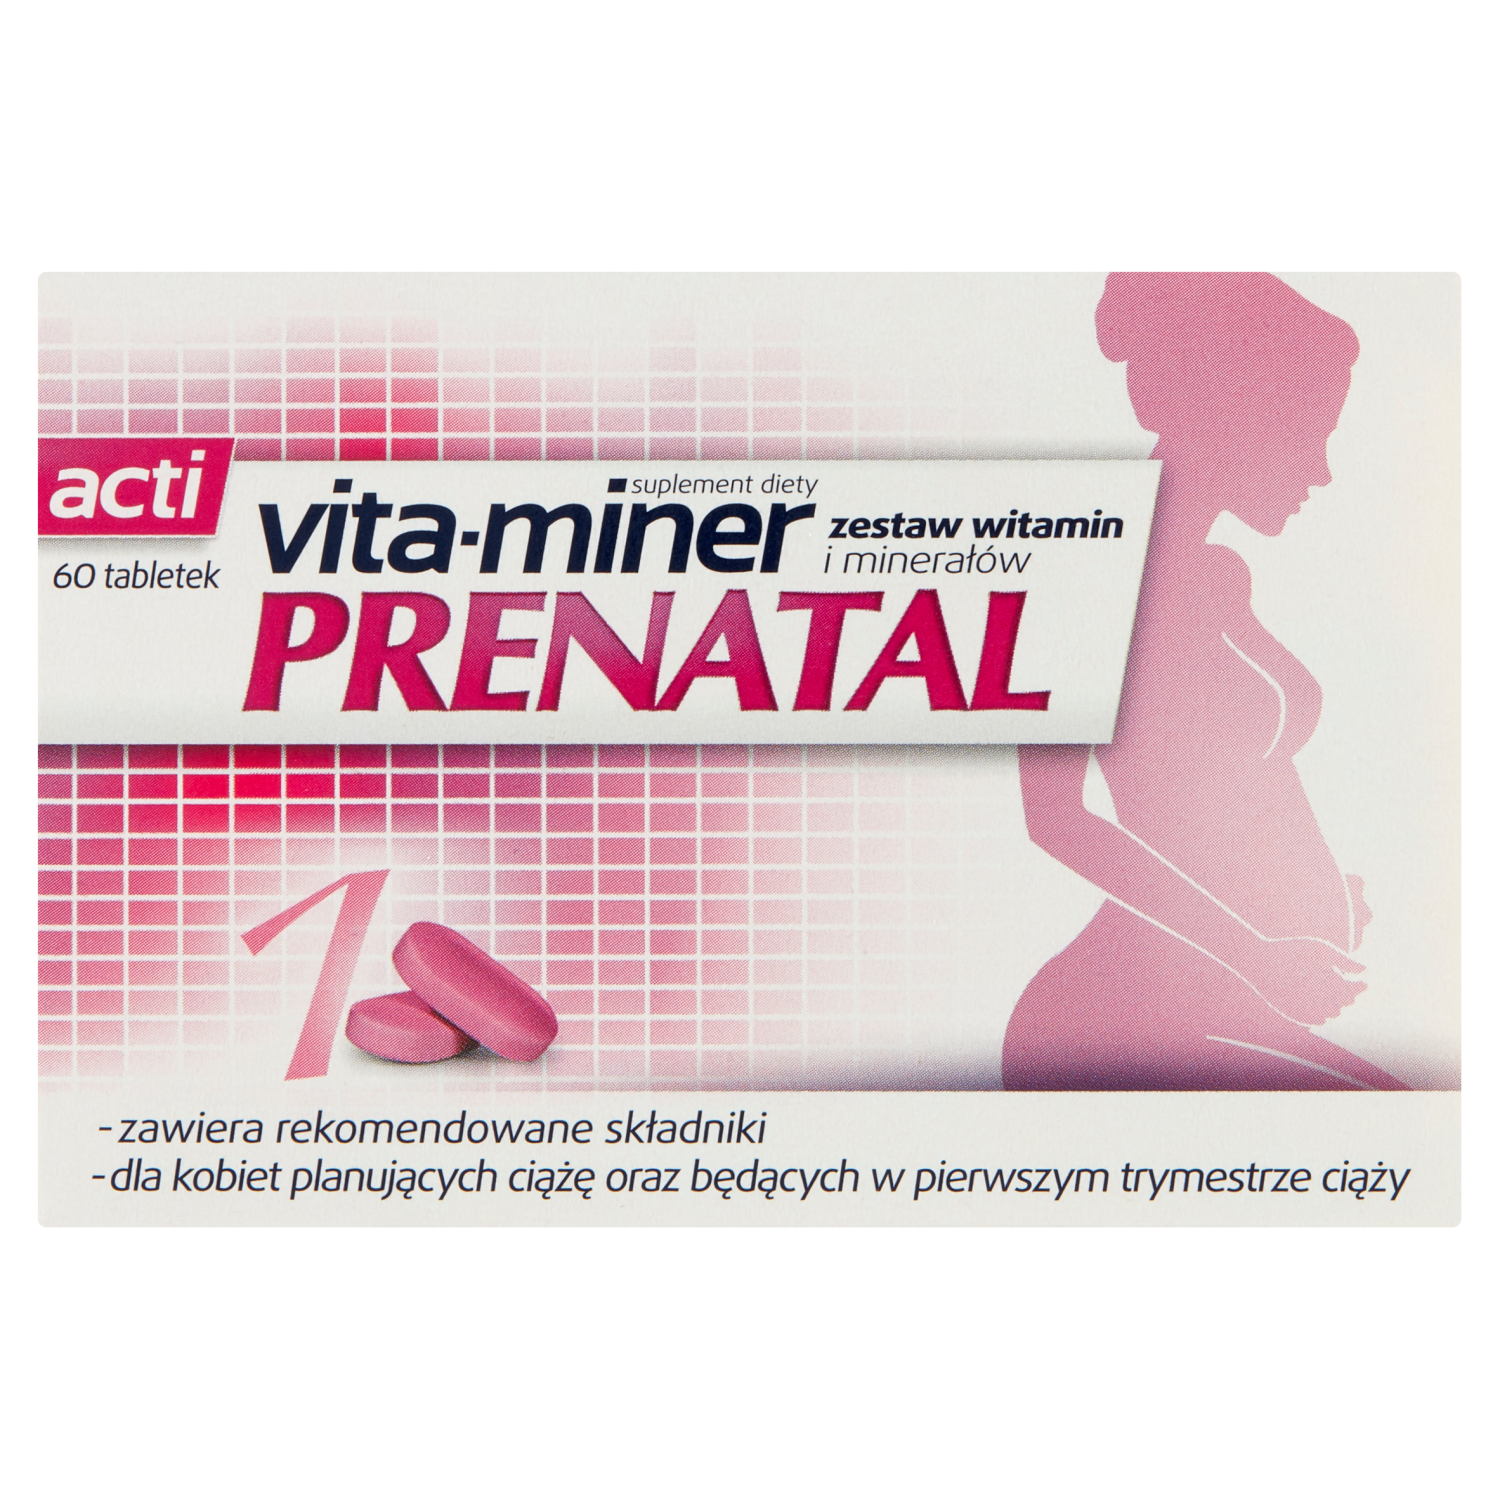 liporedium биологически активная добавка 60 таблеток 1 упаковка Vita-Miner Prenatal биологически активная добавка, 60 таблеток/1 упаковка